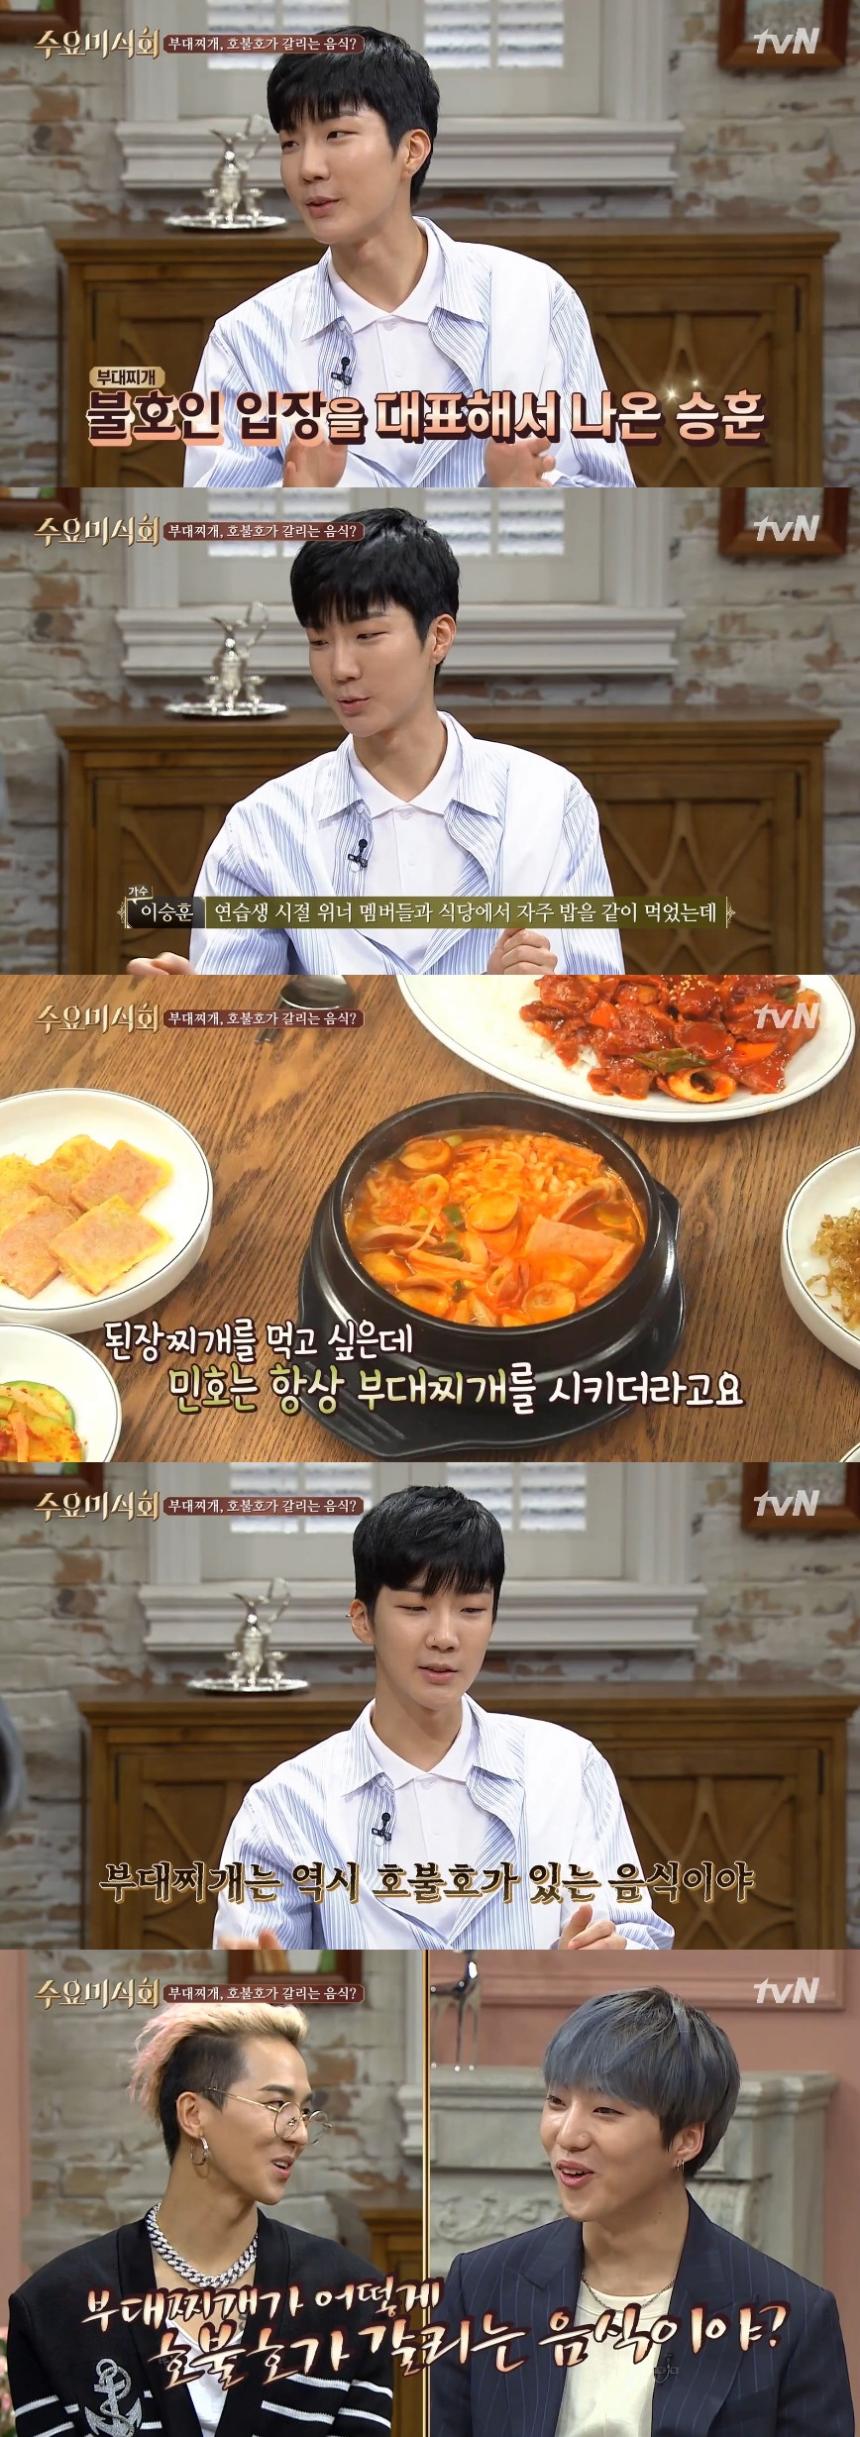 tvN ‘수요미식회’ 캡처 / 네이버 TV